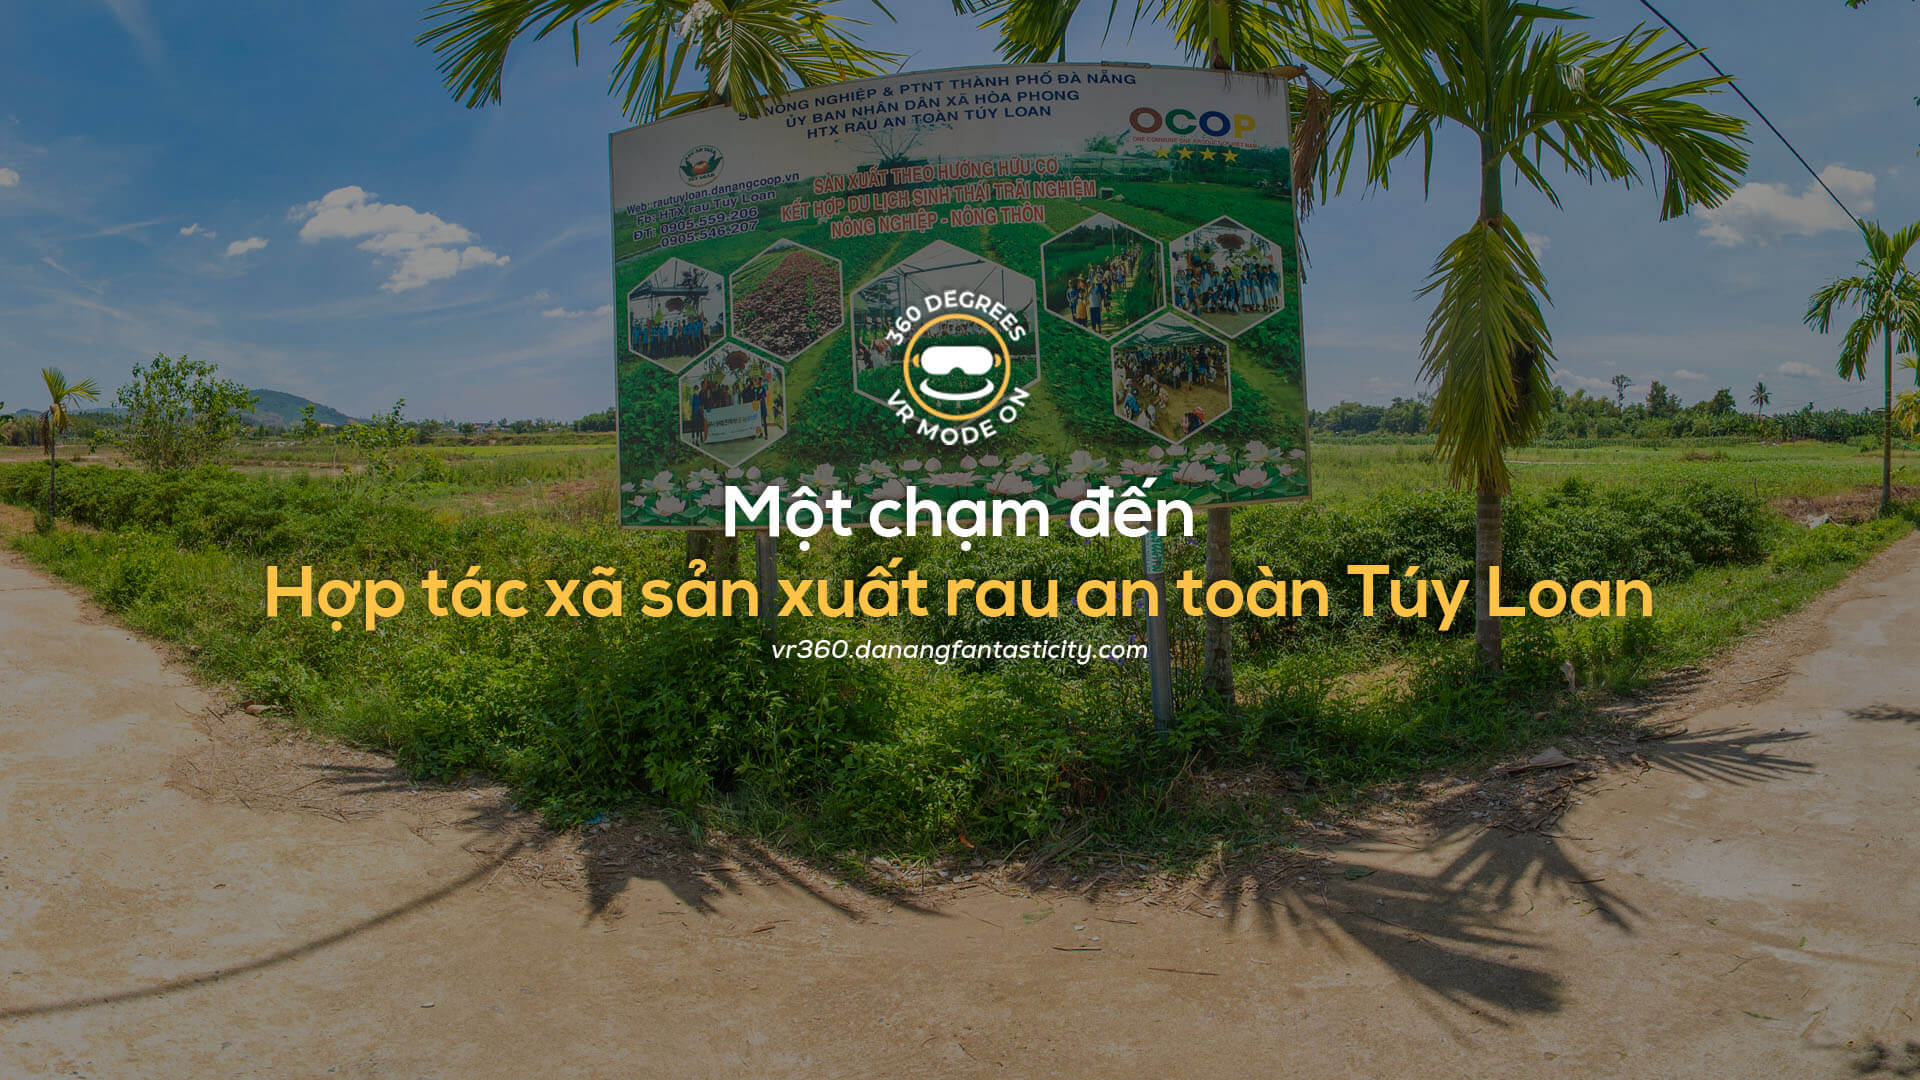 Hop Tac Xa San Xuat Rau An Toan Tuy Loan